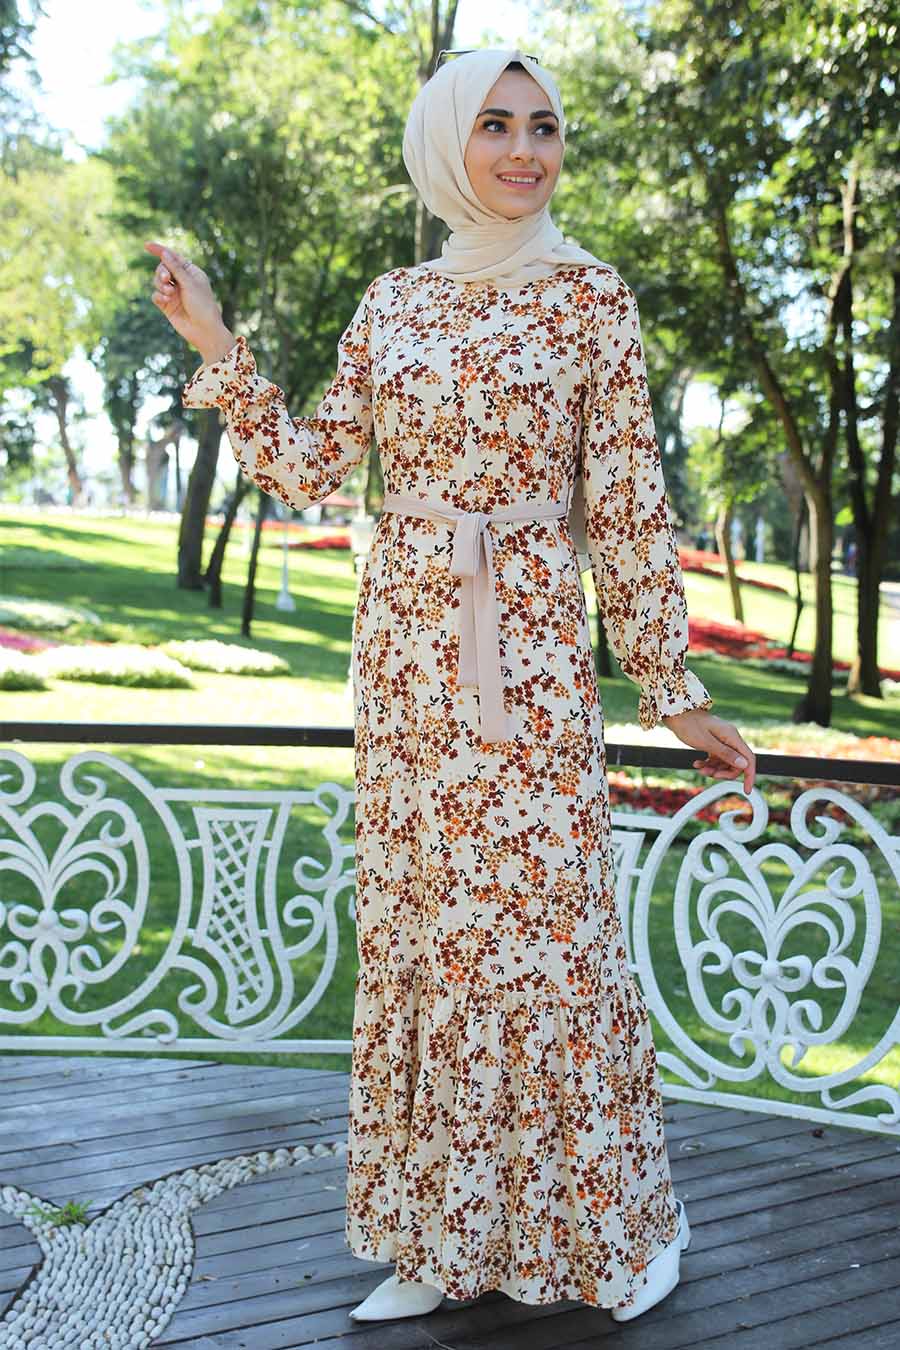 Etek Ucu Fırfırlı Çiçek Desenli Tesettür Elbise - Krem